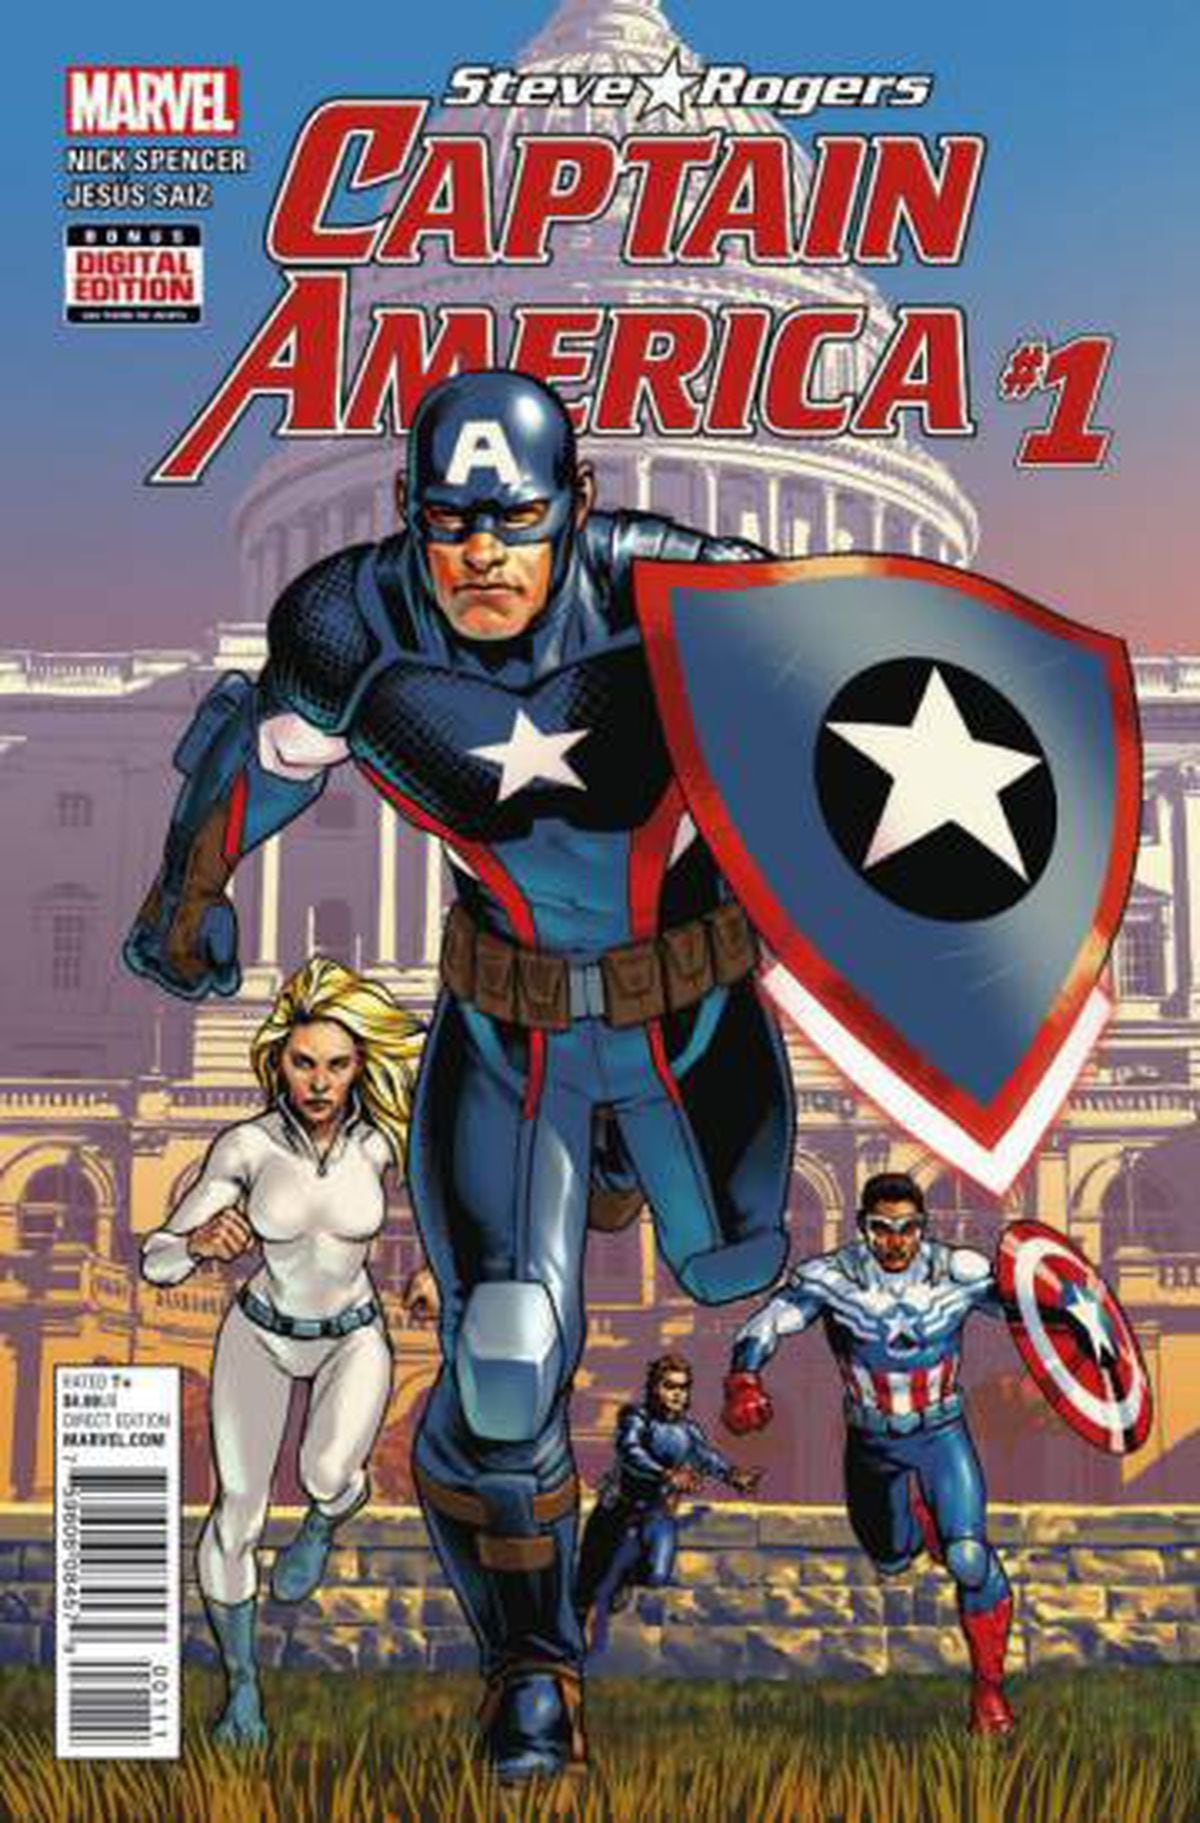 El Capitán América, ¿agente de Hydra? | Cultura PAÍS